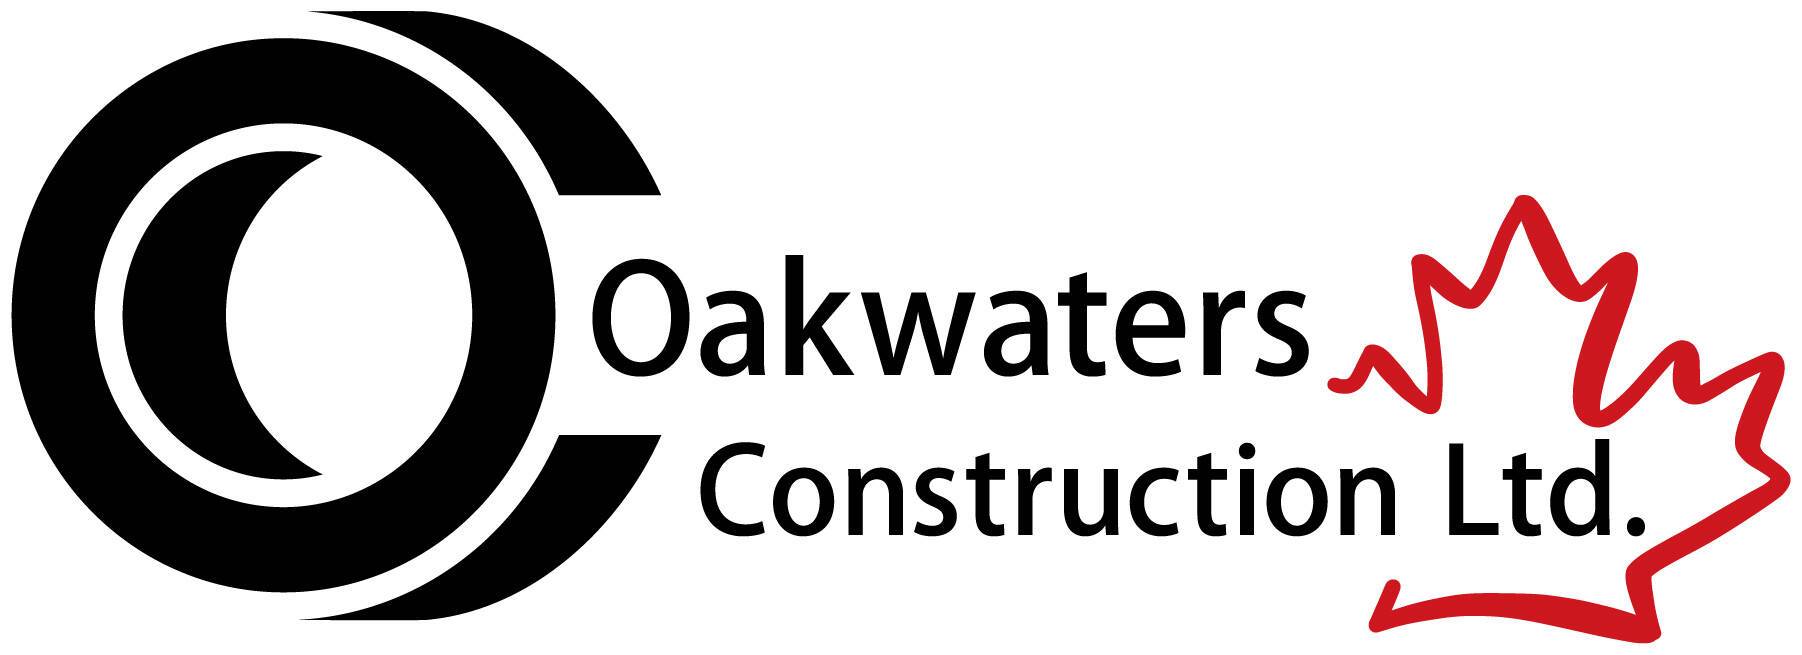 Oakwaters Construction Ltd.